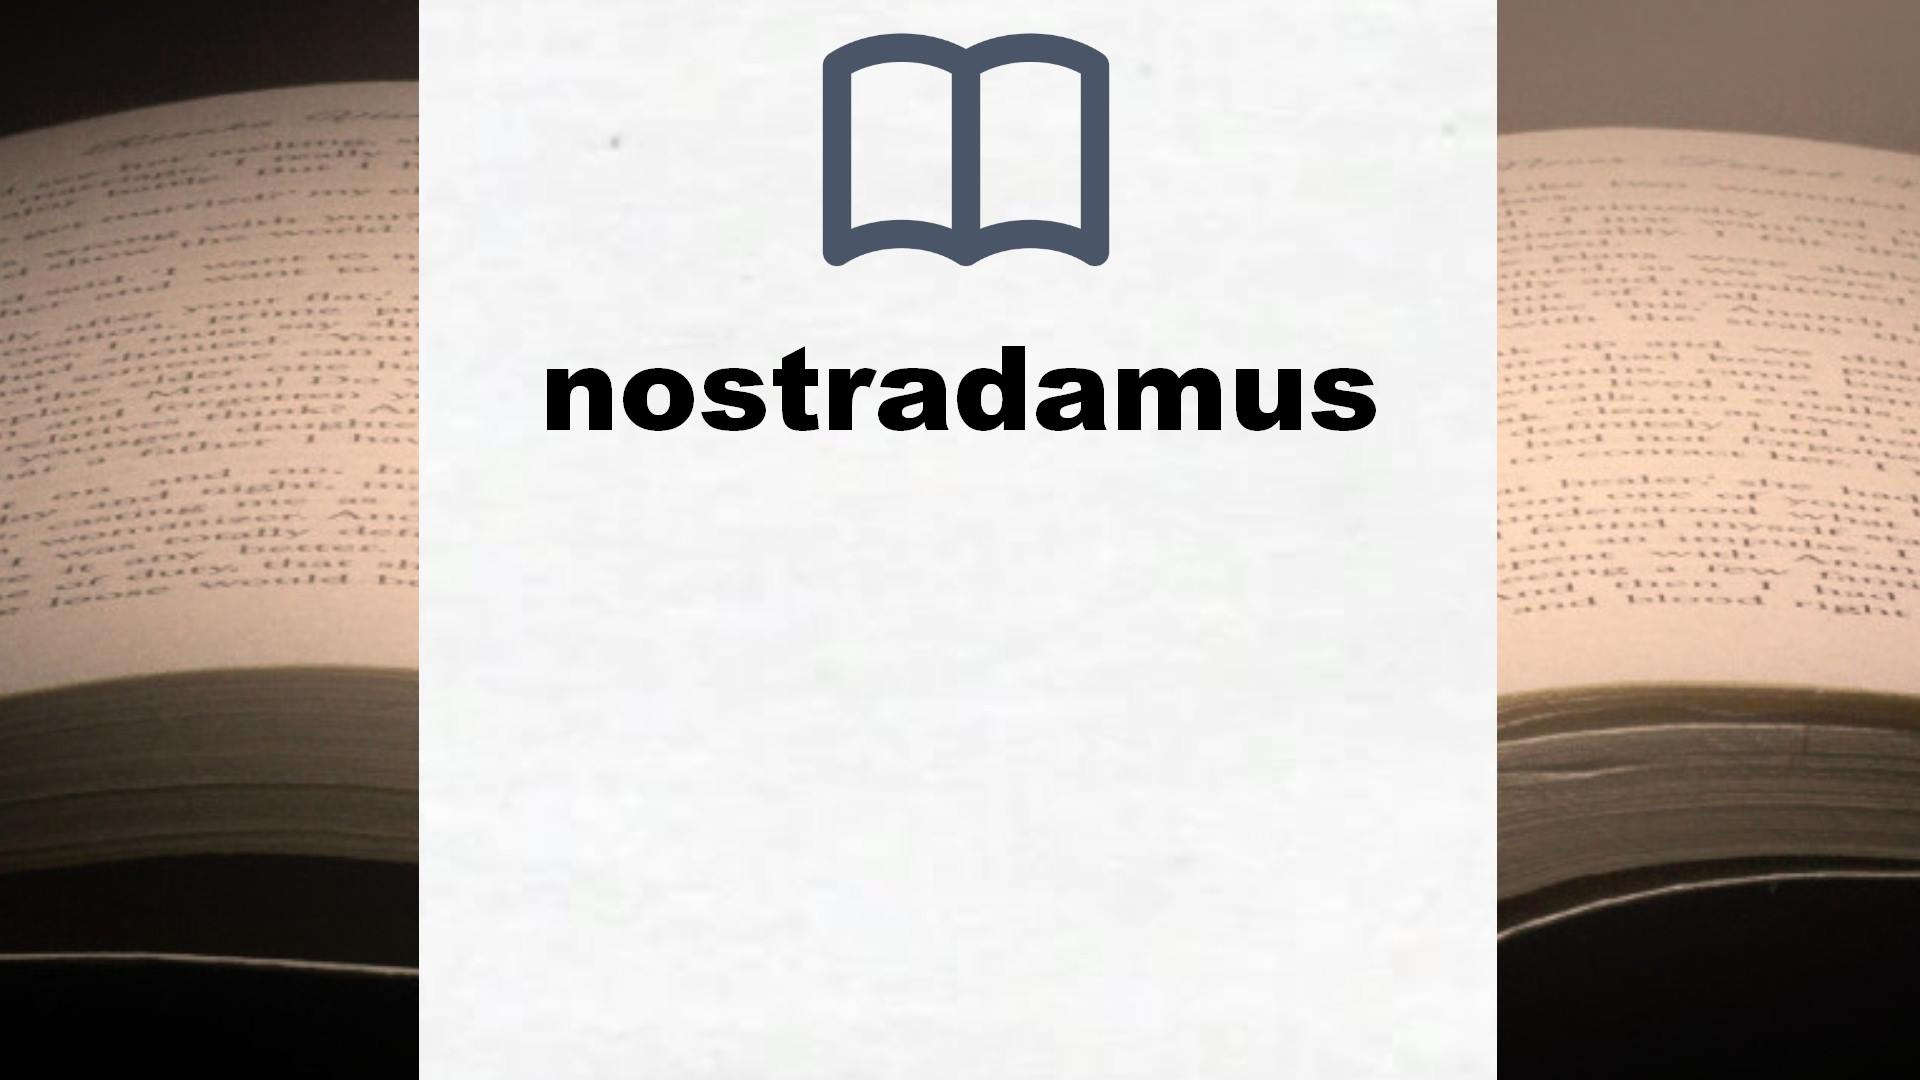 Libros sobre nostradamus